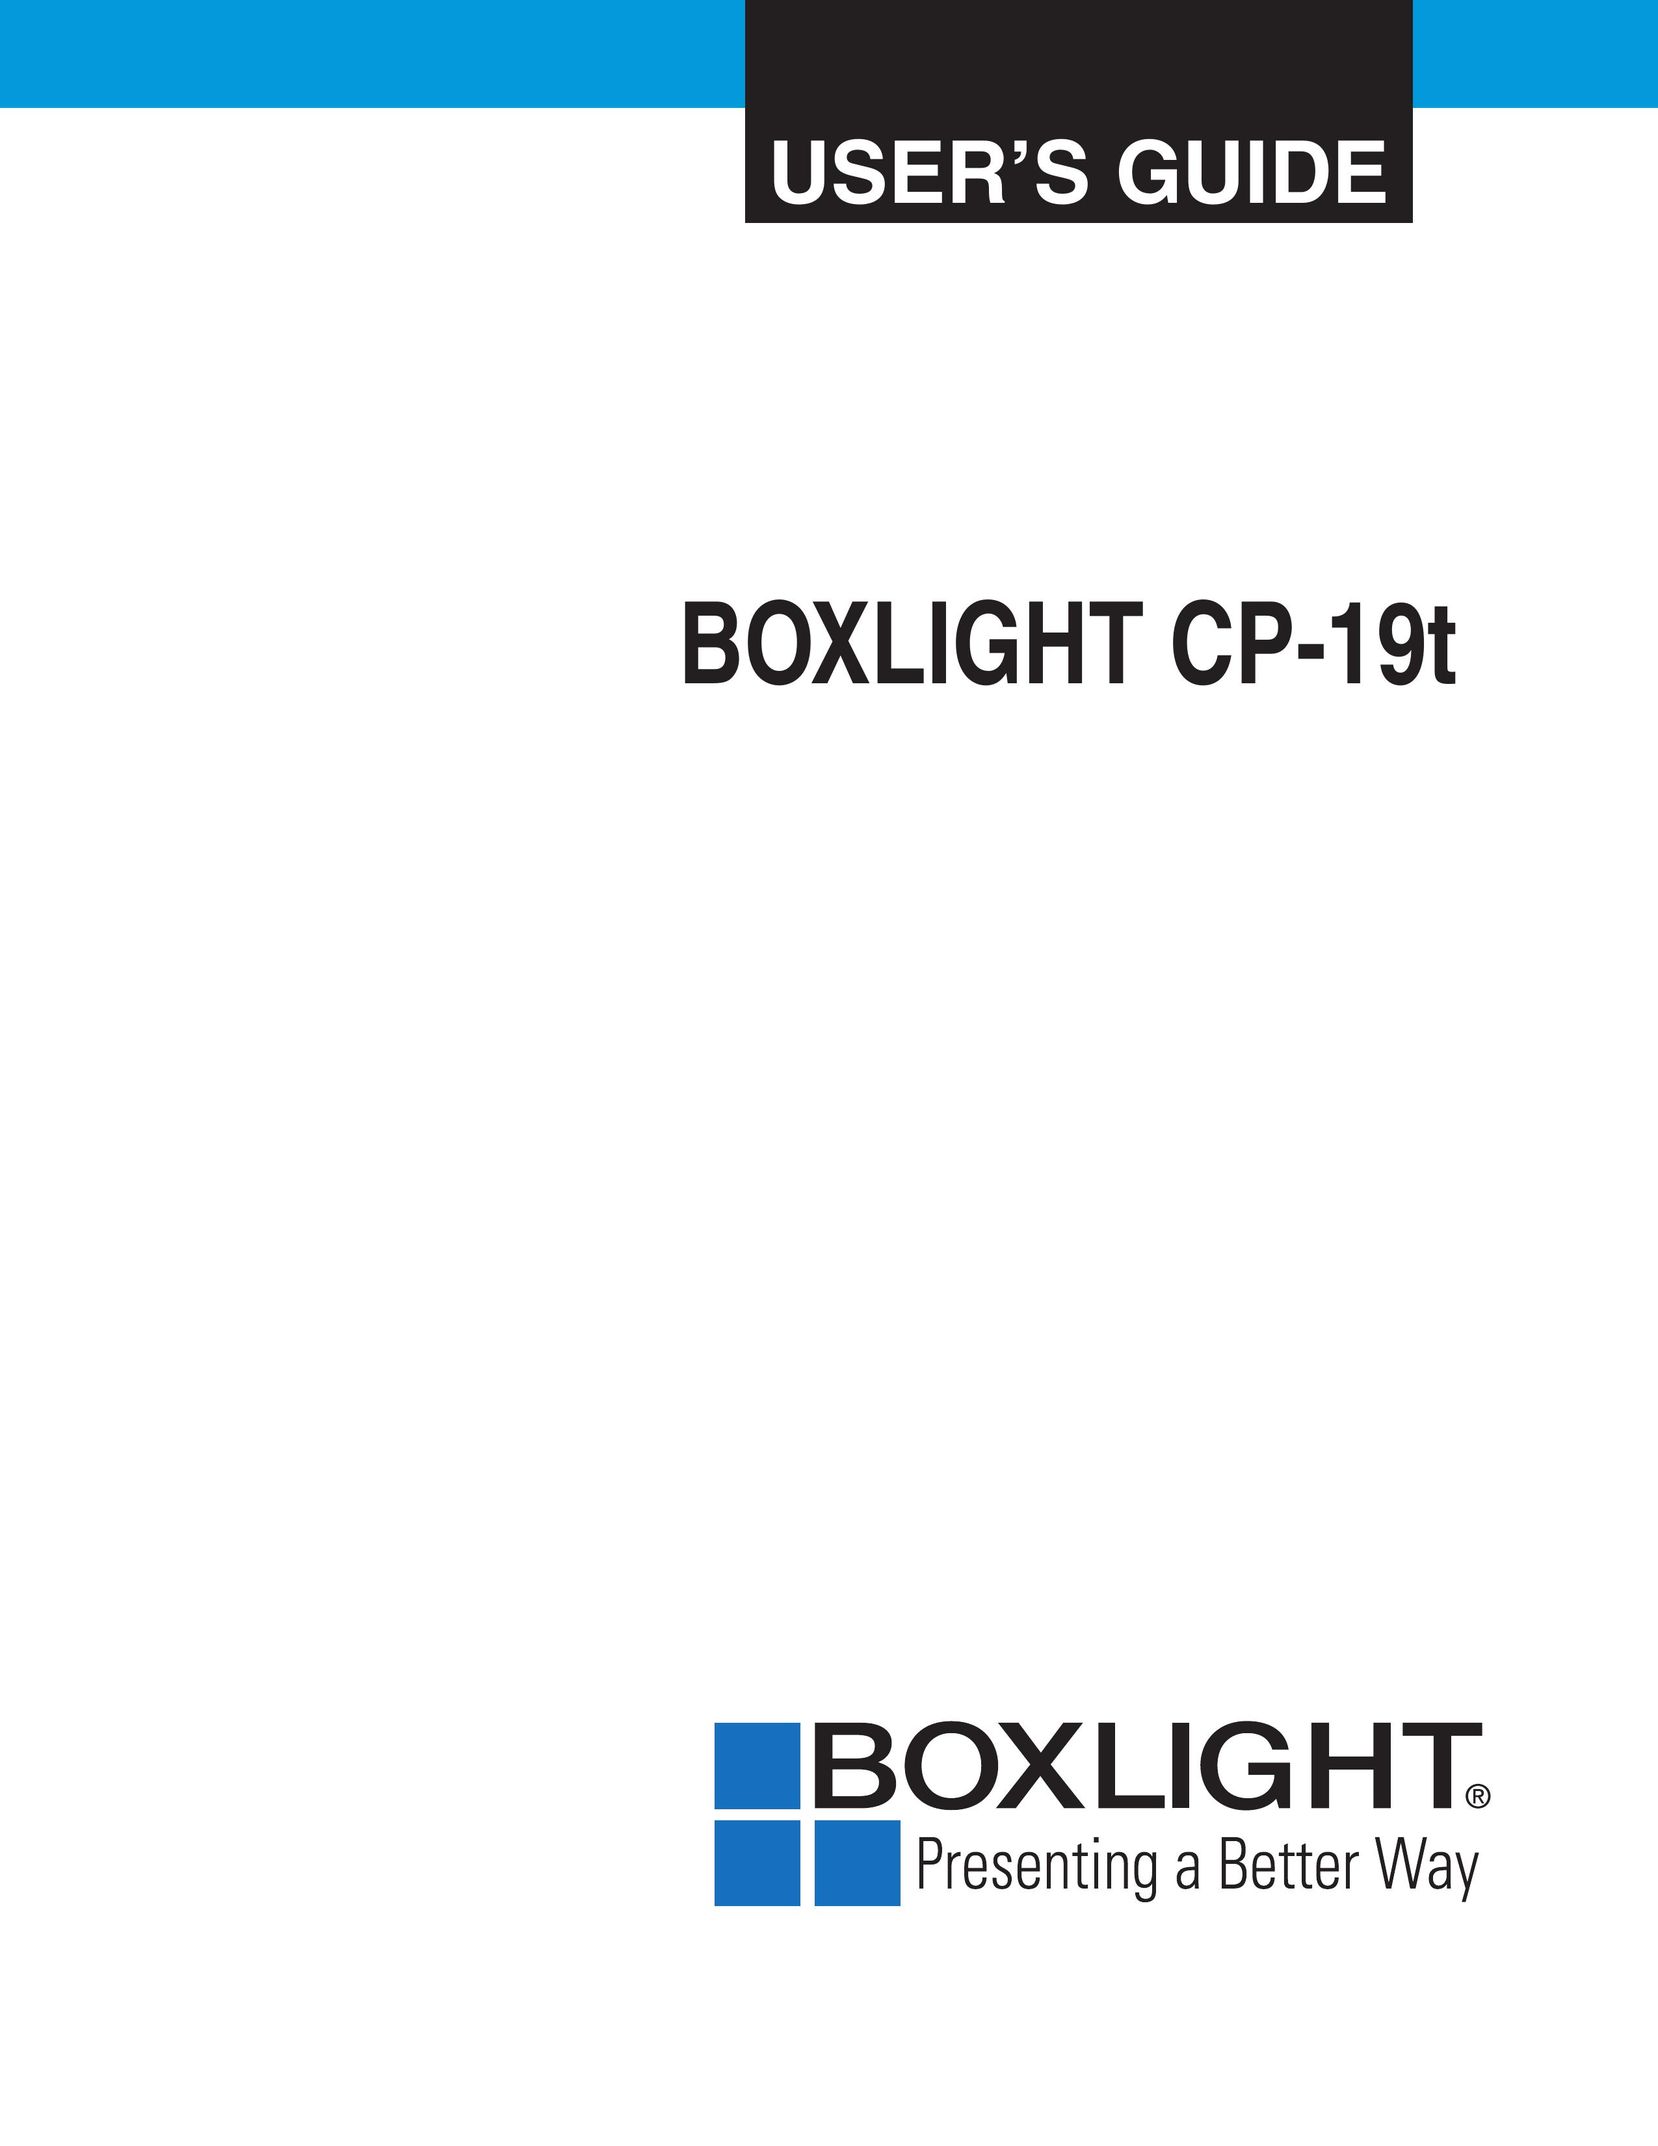 BOXLIGHT CP-19t Projector User Manual